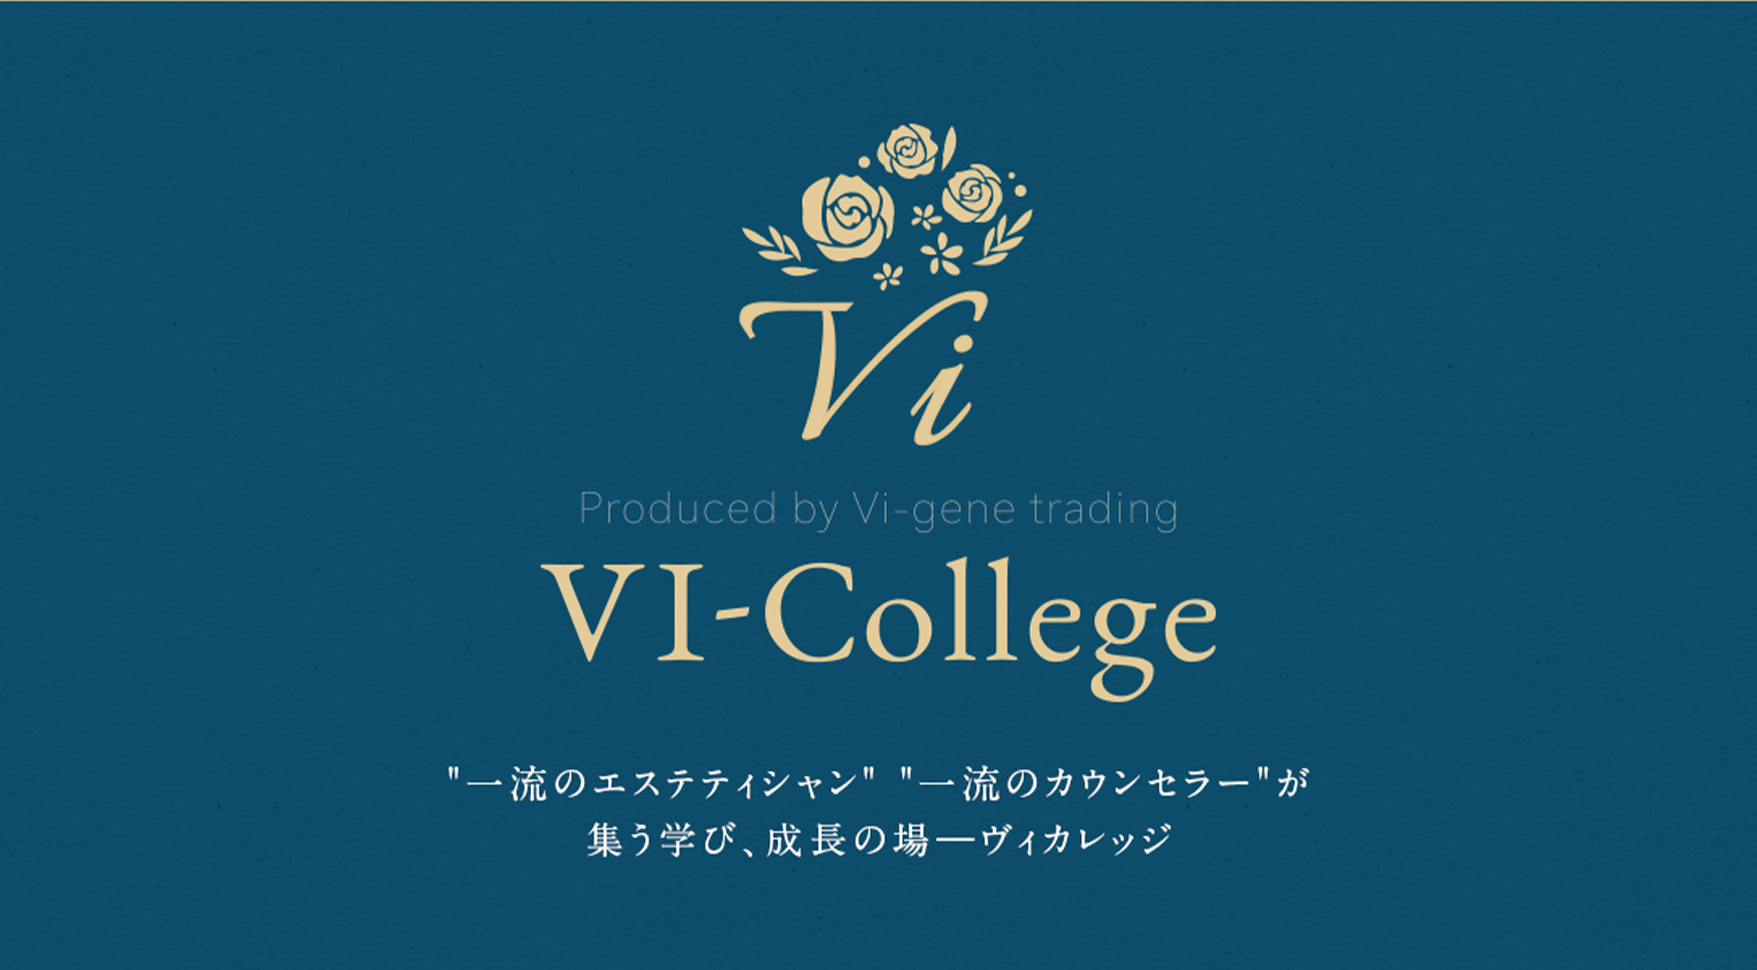 VI-College（株式会社ヴィジーン・トレーディング）